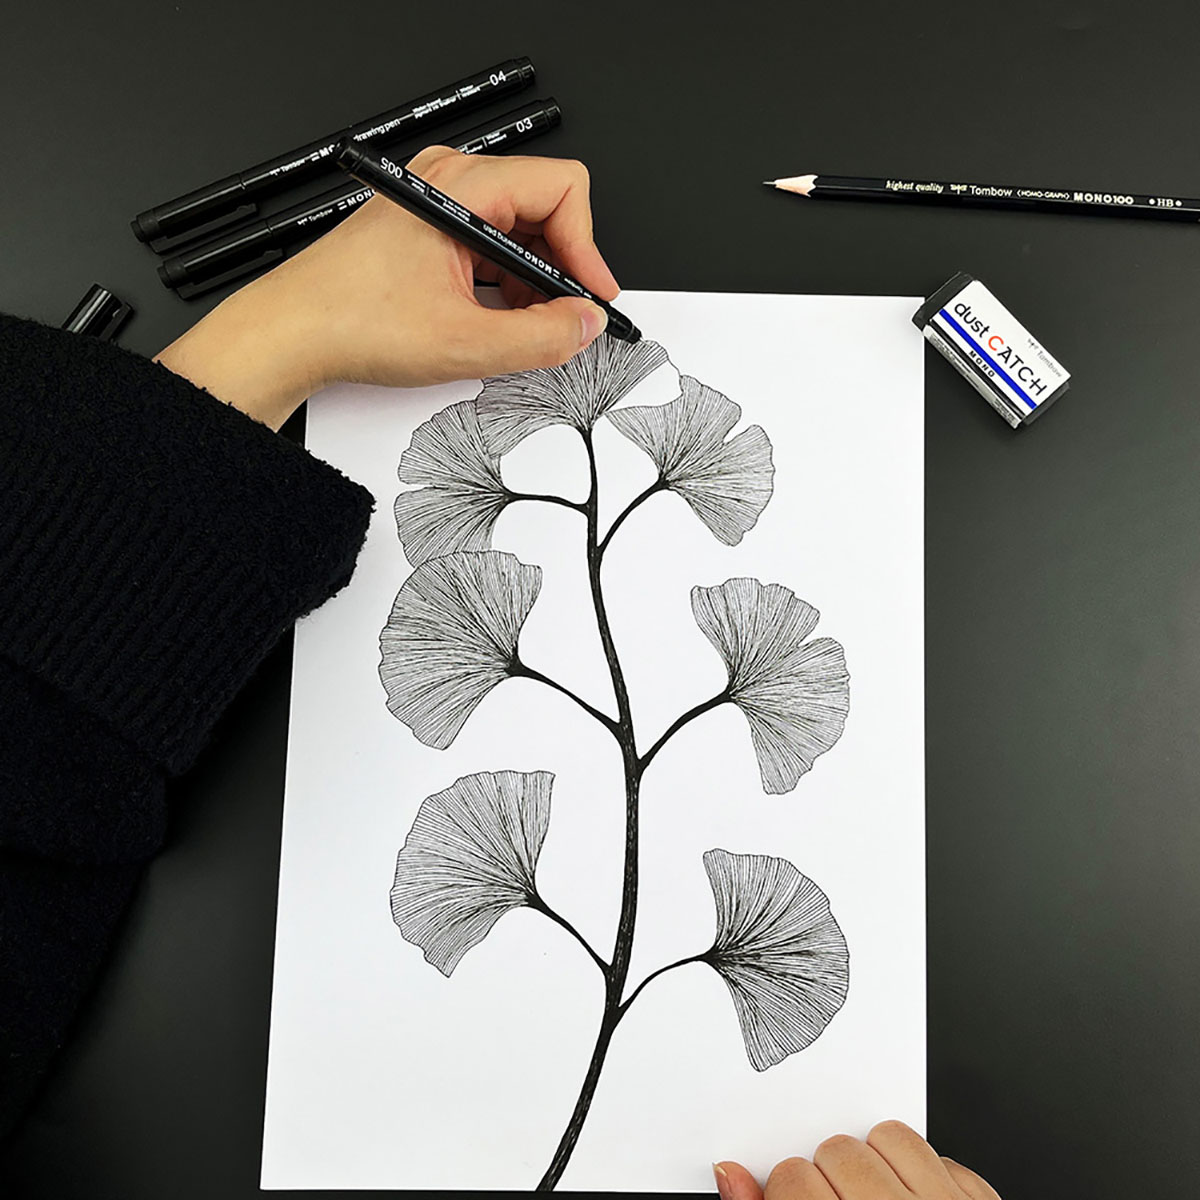 Uni Pin Fineliner Drawing Pen - Sketching Set - Black Ink - 0.01